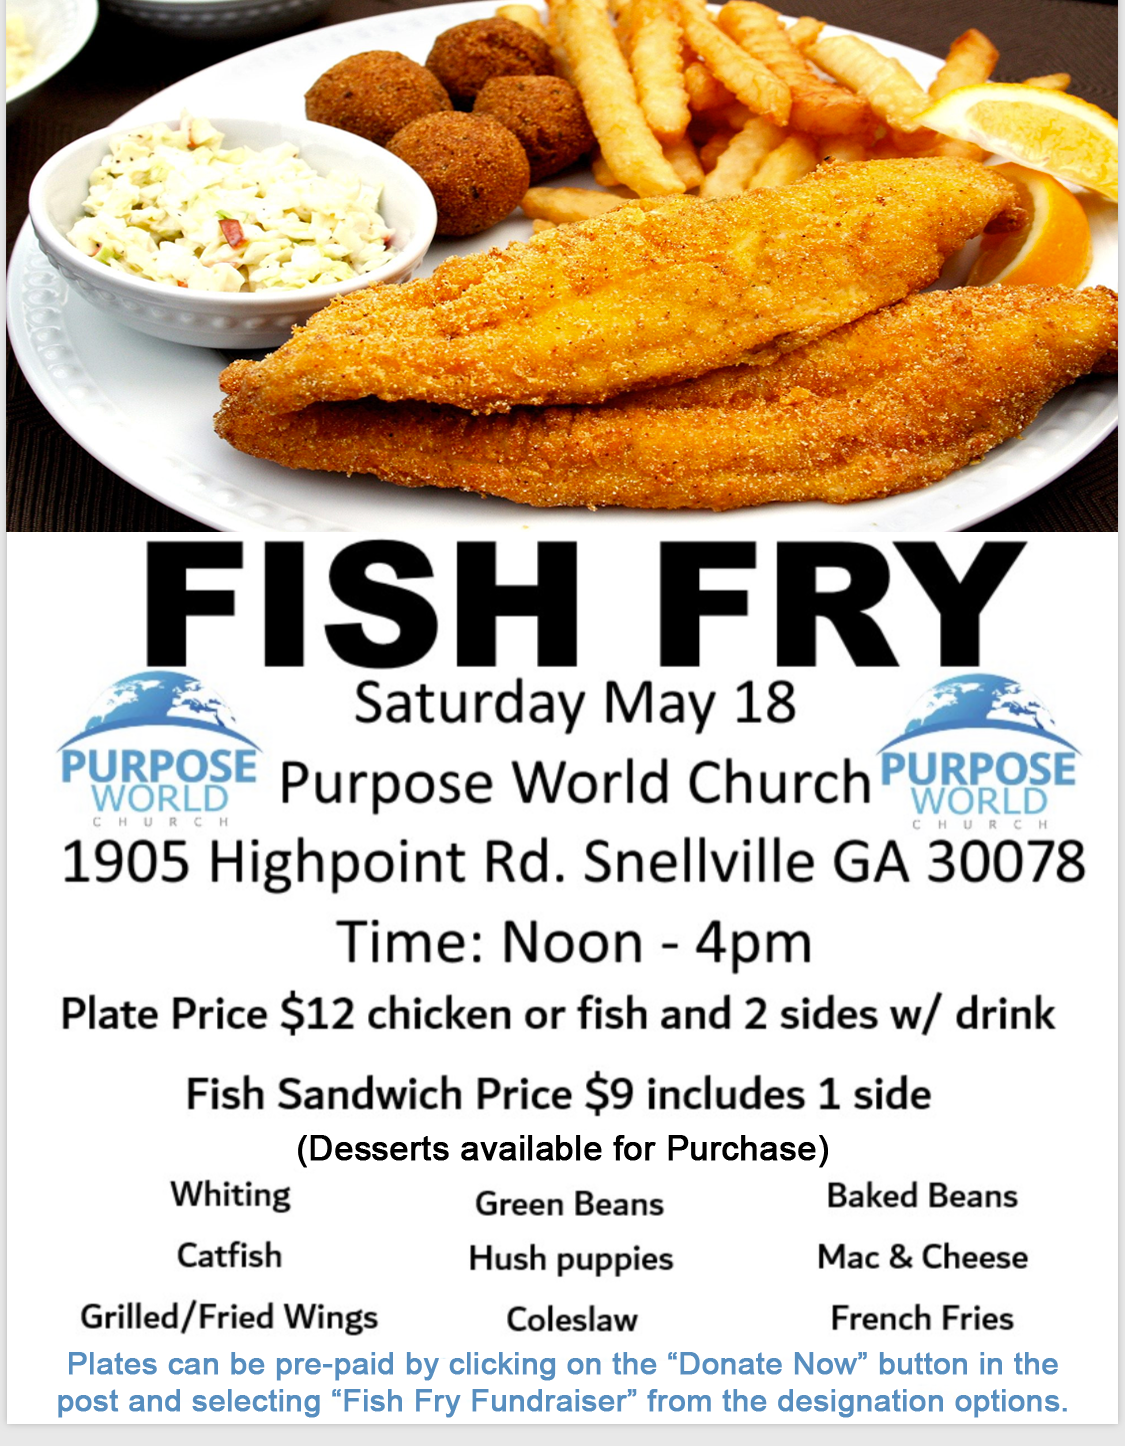 Purpose World Church Fish Fry Saturday, May 18, 2019